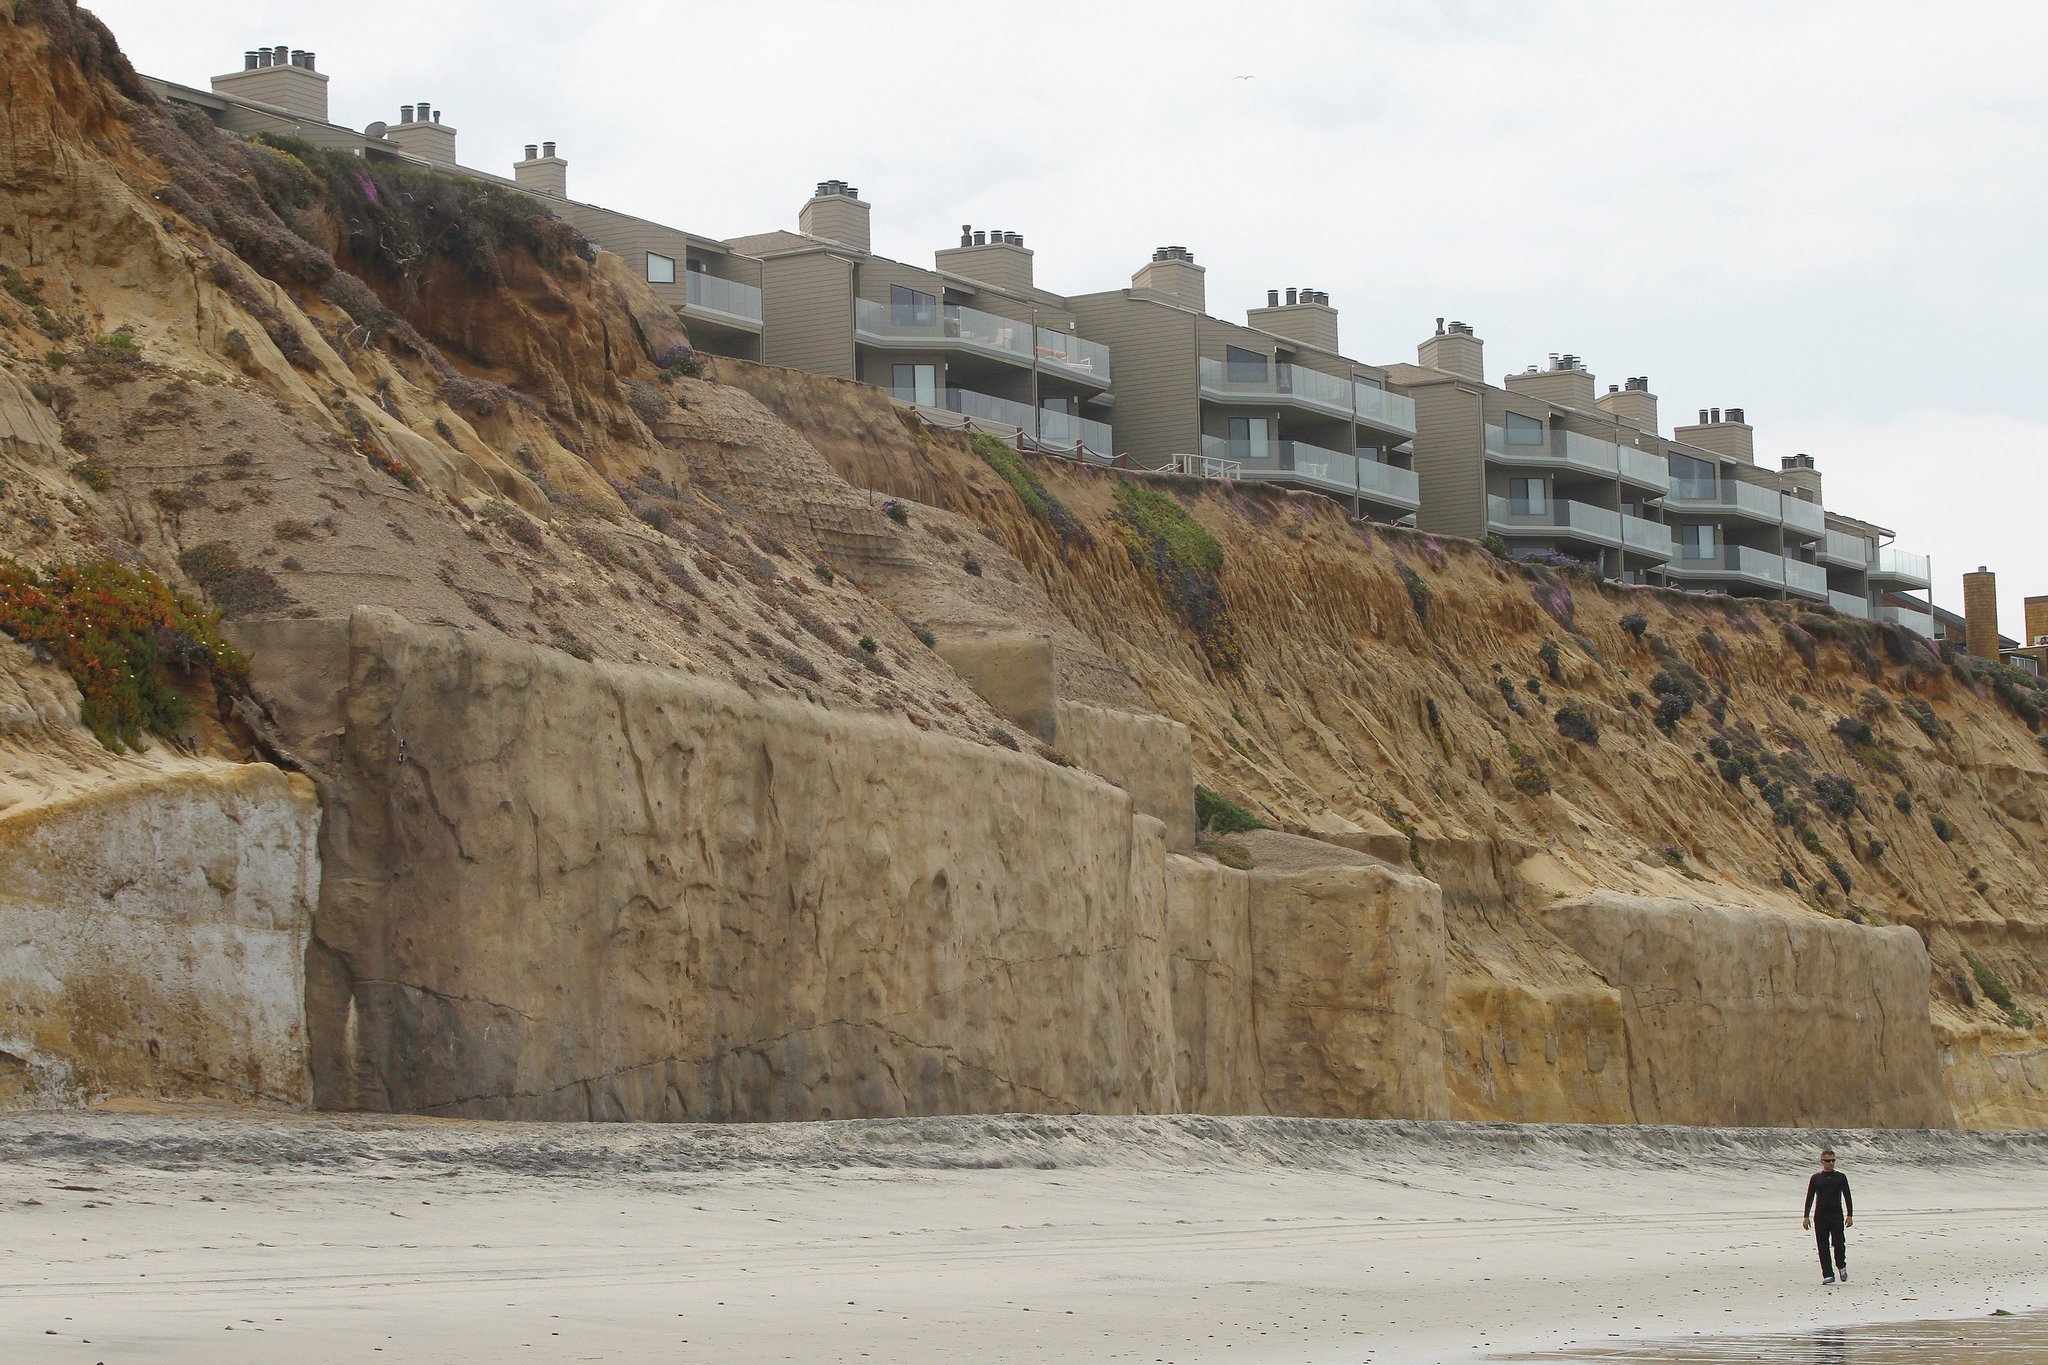 Solana Beach seawall debate pushes ahead - The San Diego ...